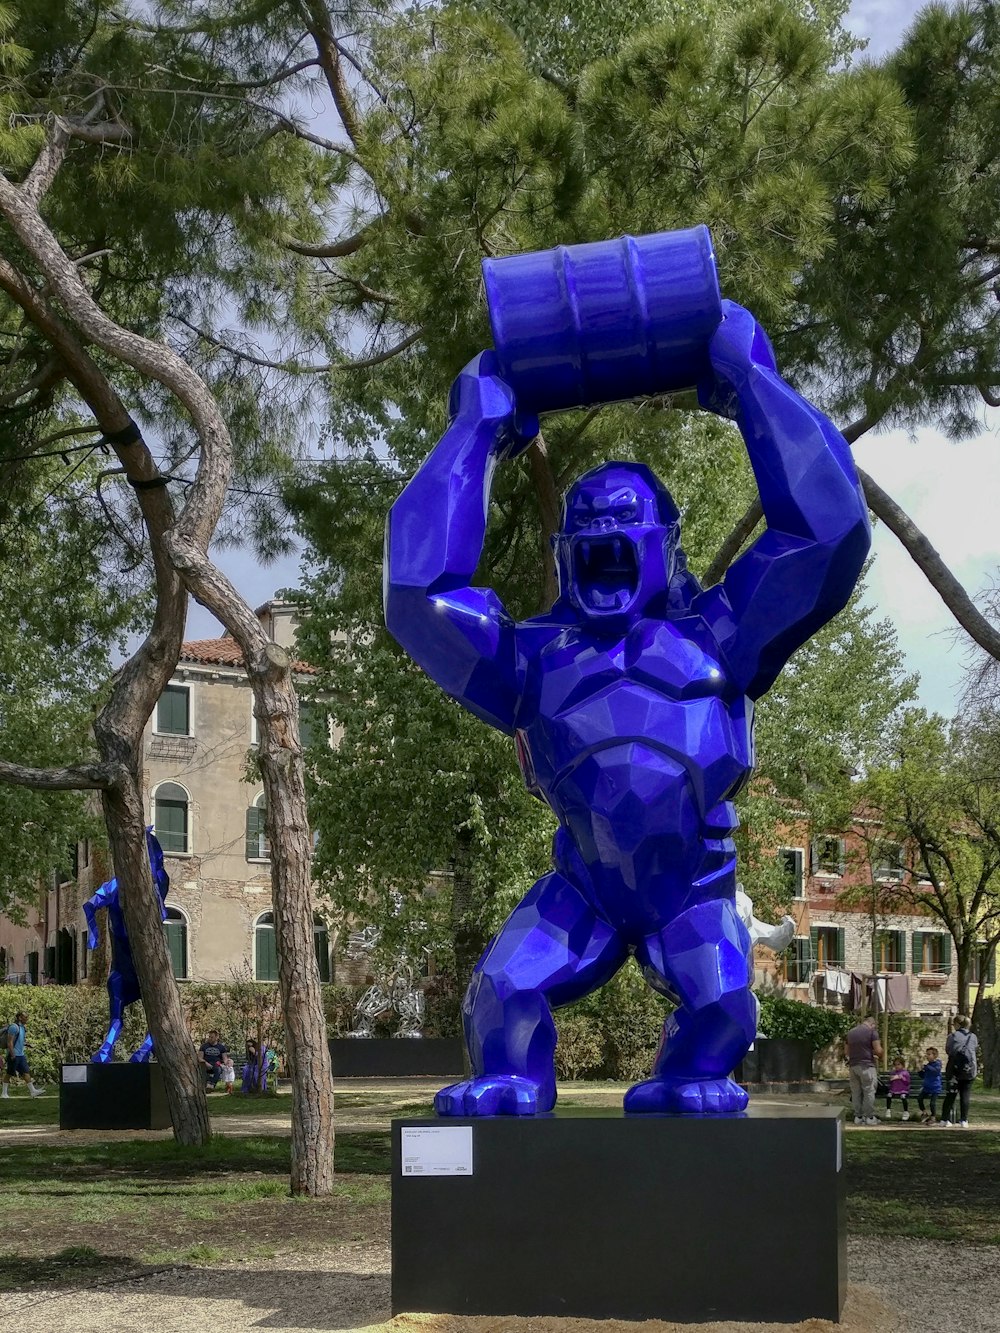 a blue sculpture of a man holding a barrel